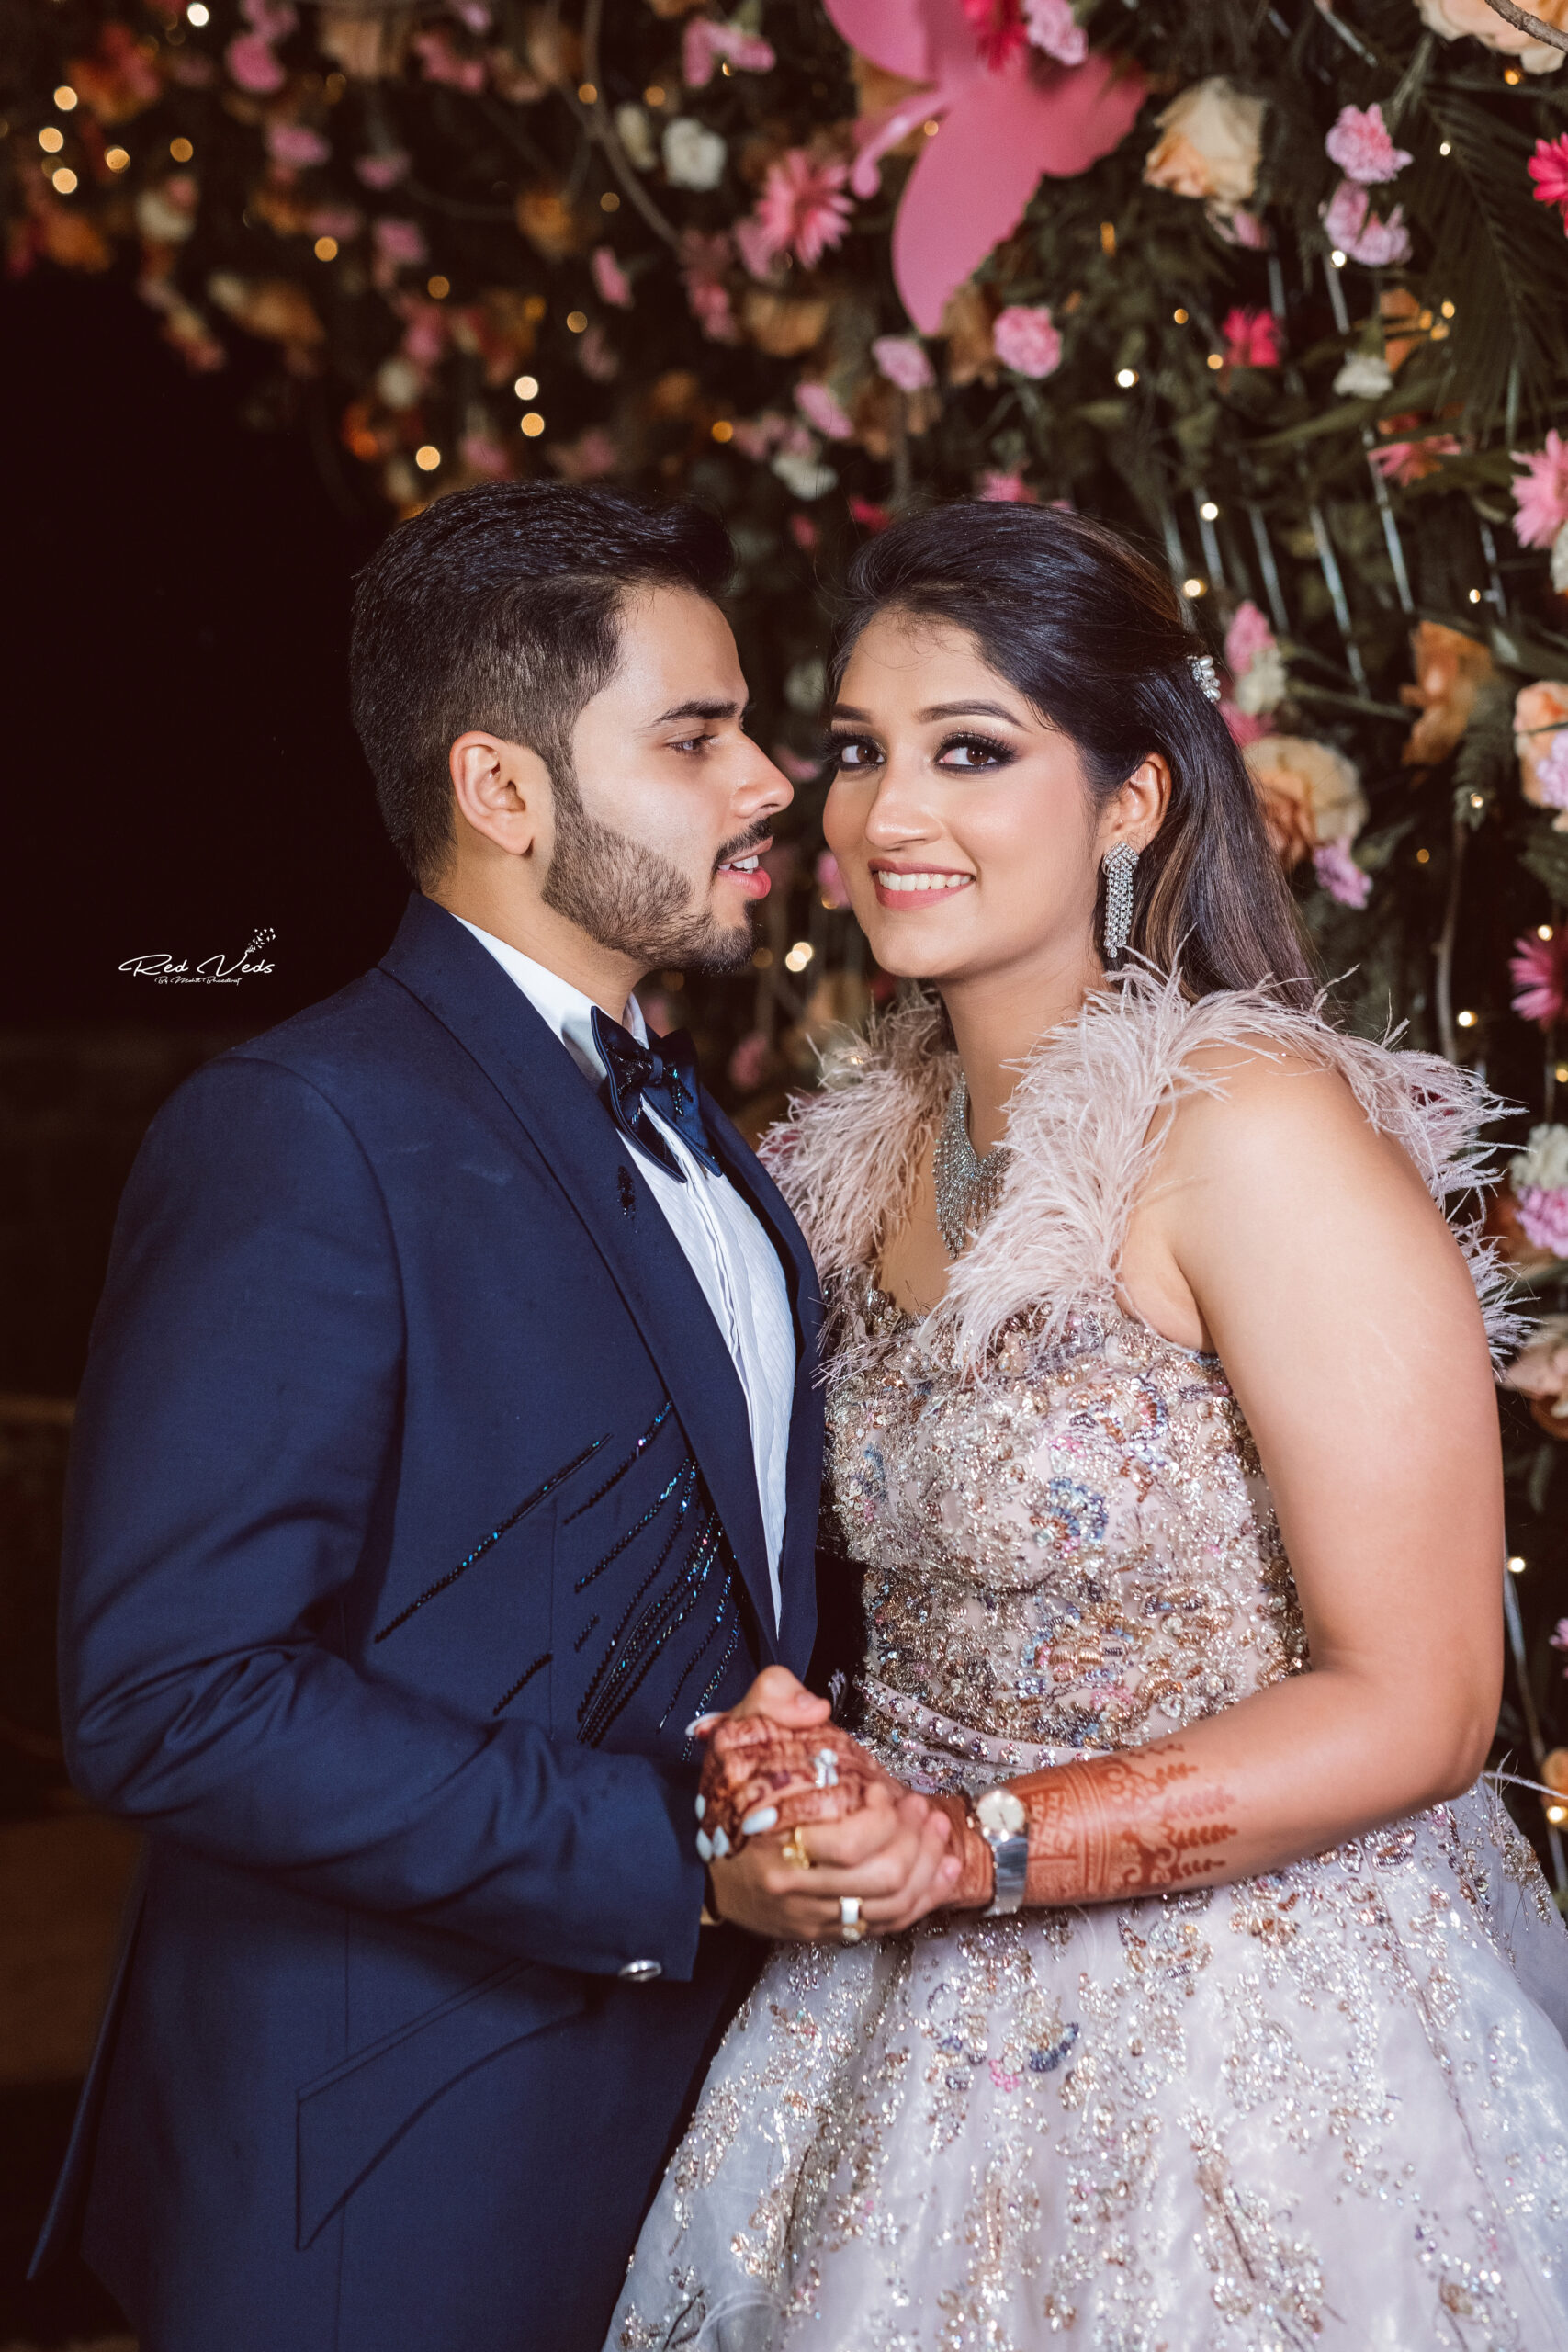 Bridal Saree | Indian wedding photography poses, Photo poses for couples,  Wedding photoshoot poses